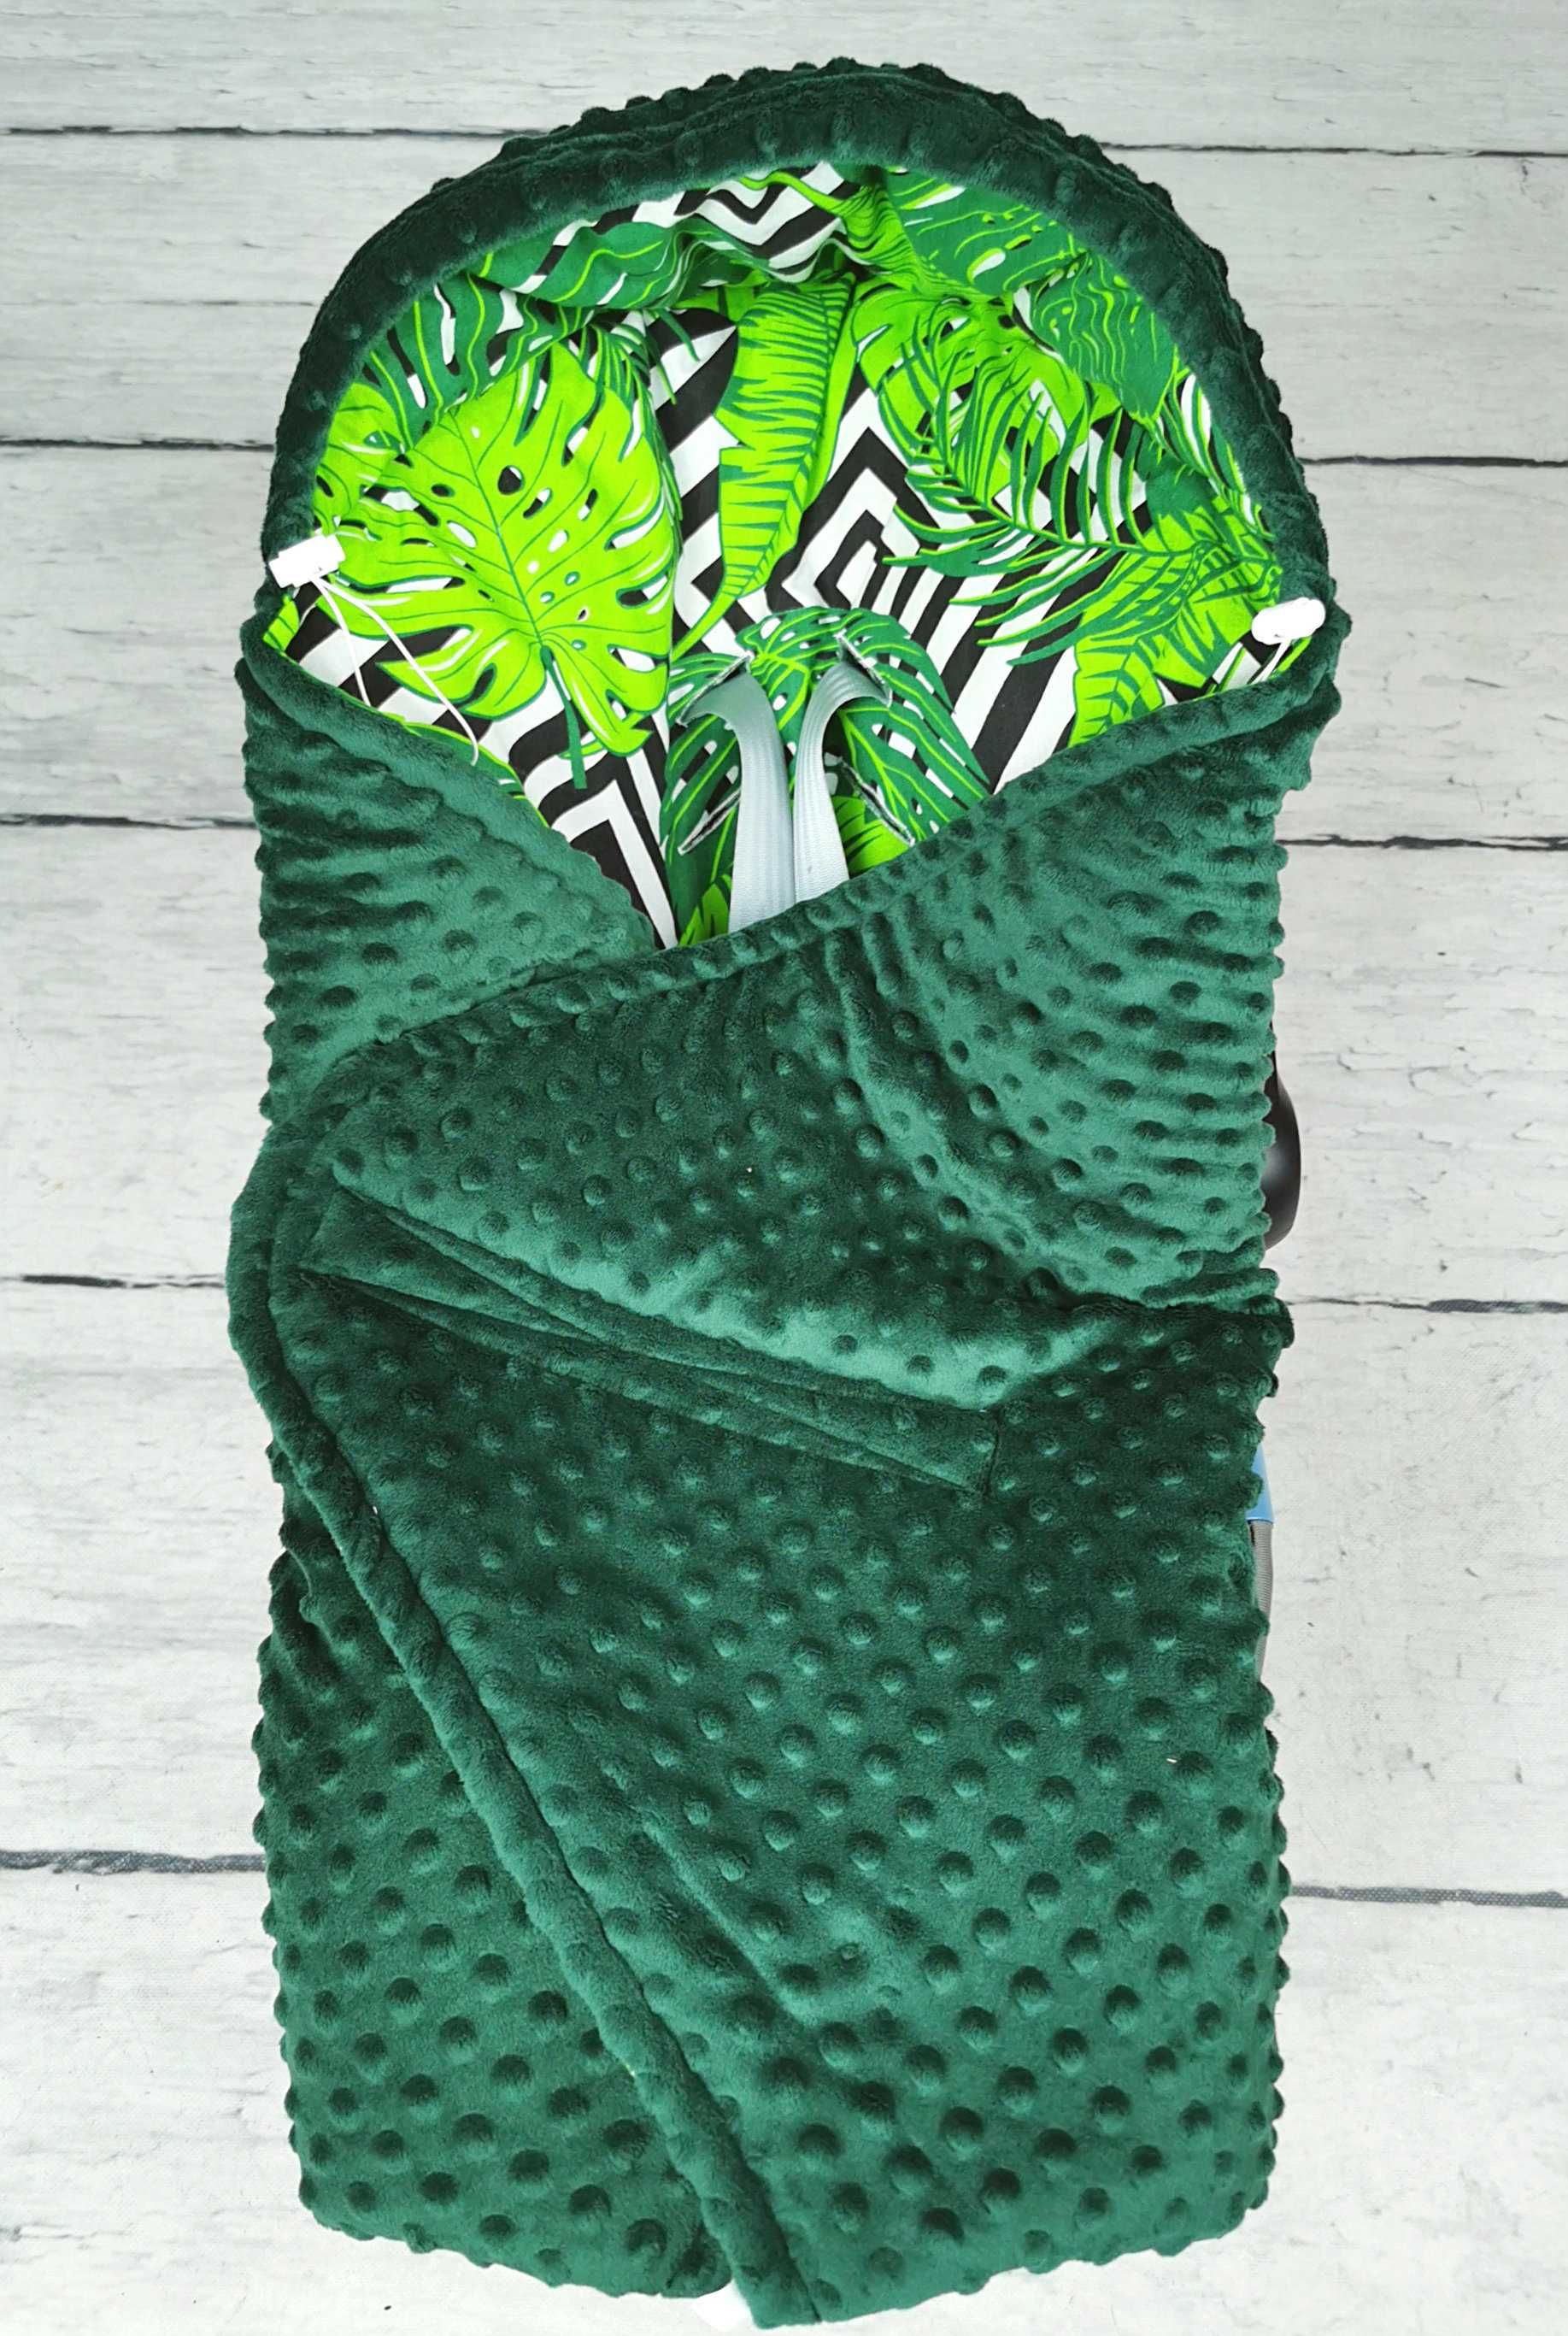 Otulacz do nosidełka, fotelika z minky (butelkowa zieleń + liście)